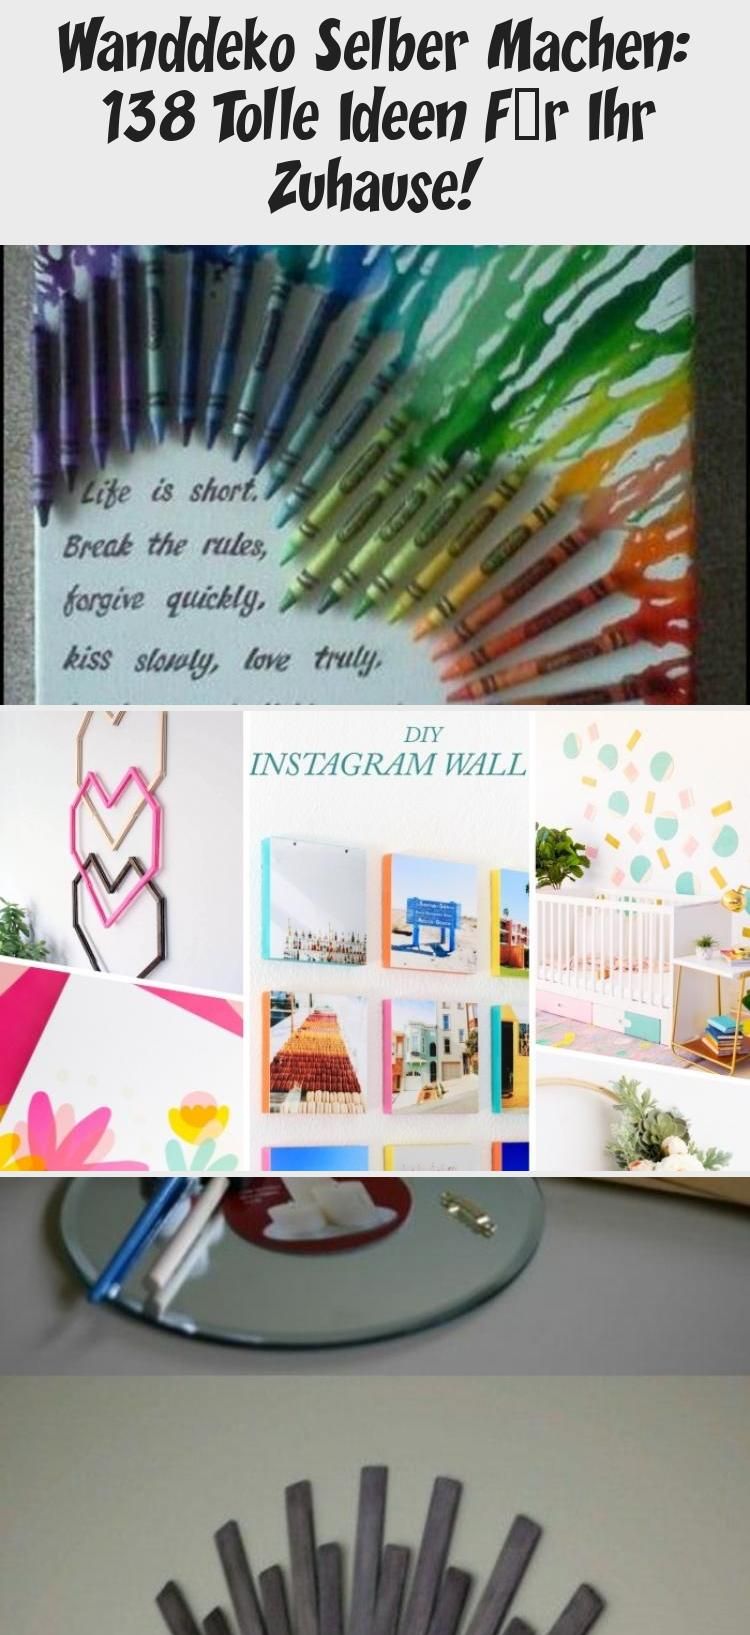 Wanddeko Selber Machen Genial Wanddeko Selber Machen 138 tolle Ideen Für Ihr Zuhause